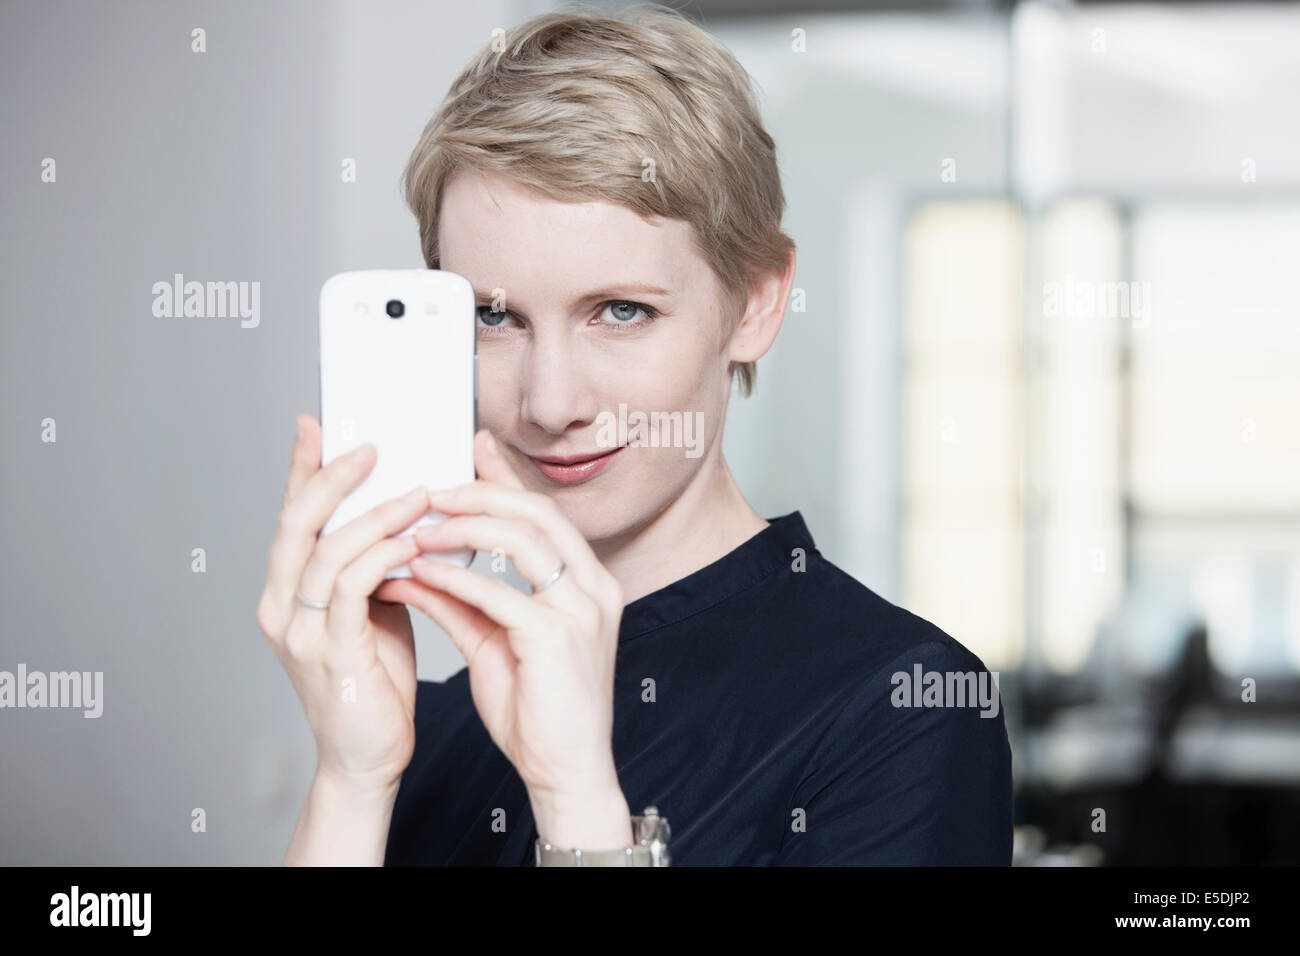 Deutschland, München, Geschäftsfrau im Büro, mit Smartphone Stockfoto